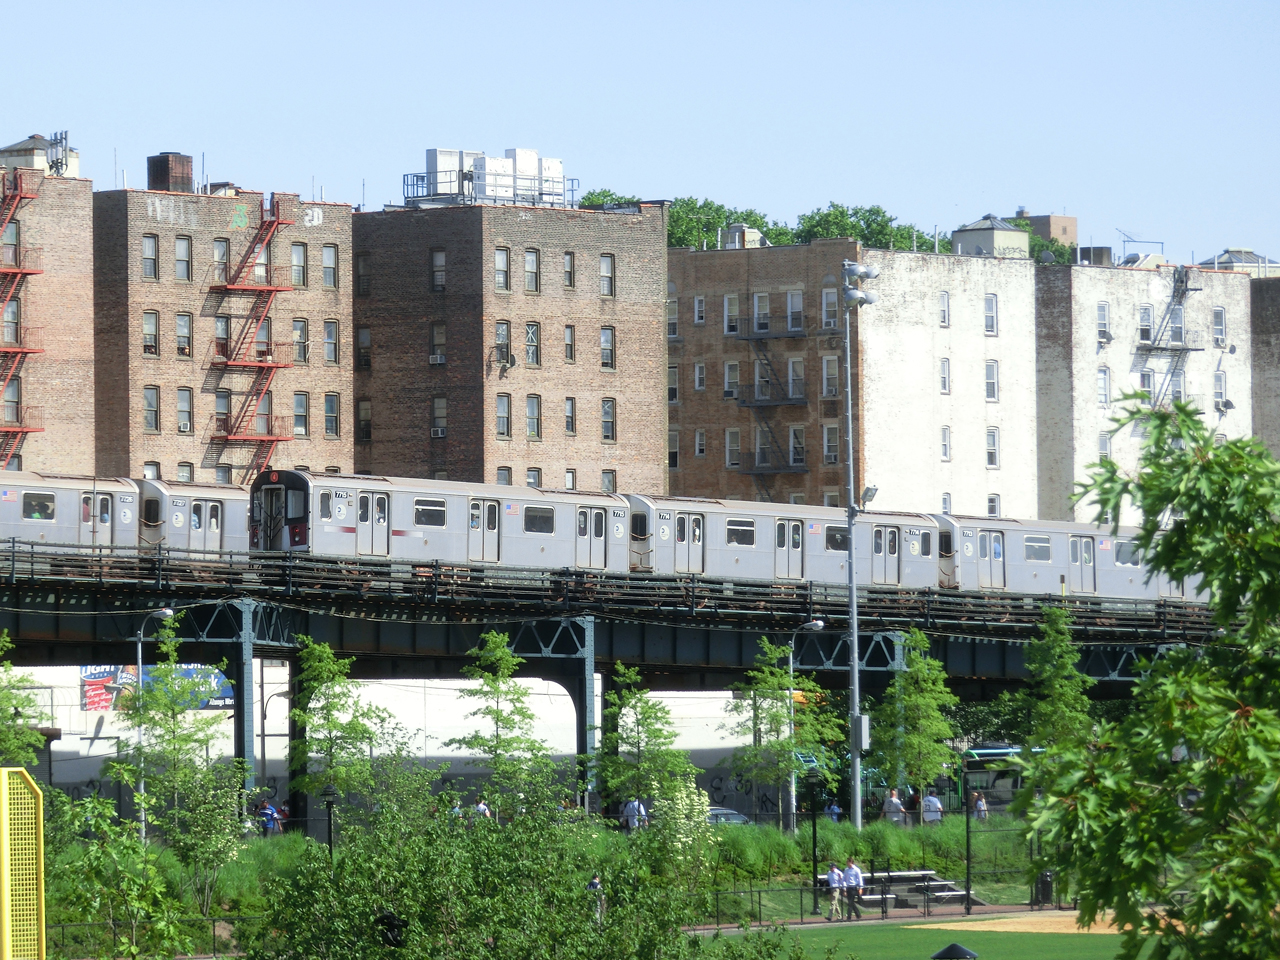 Alte Züge der New Yorker Subway auf der Hochbahn in der Bronx - im Hintergrund Wohnhäuser der Bronx